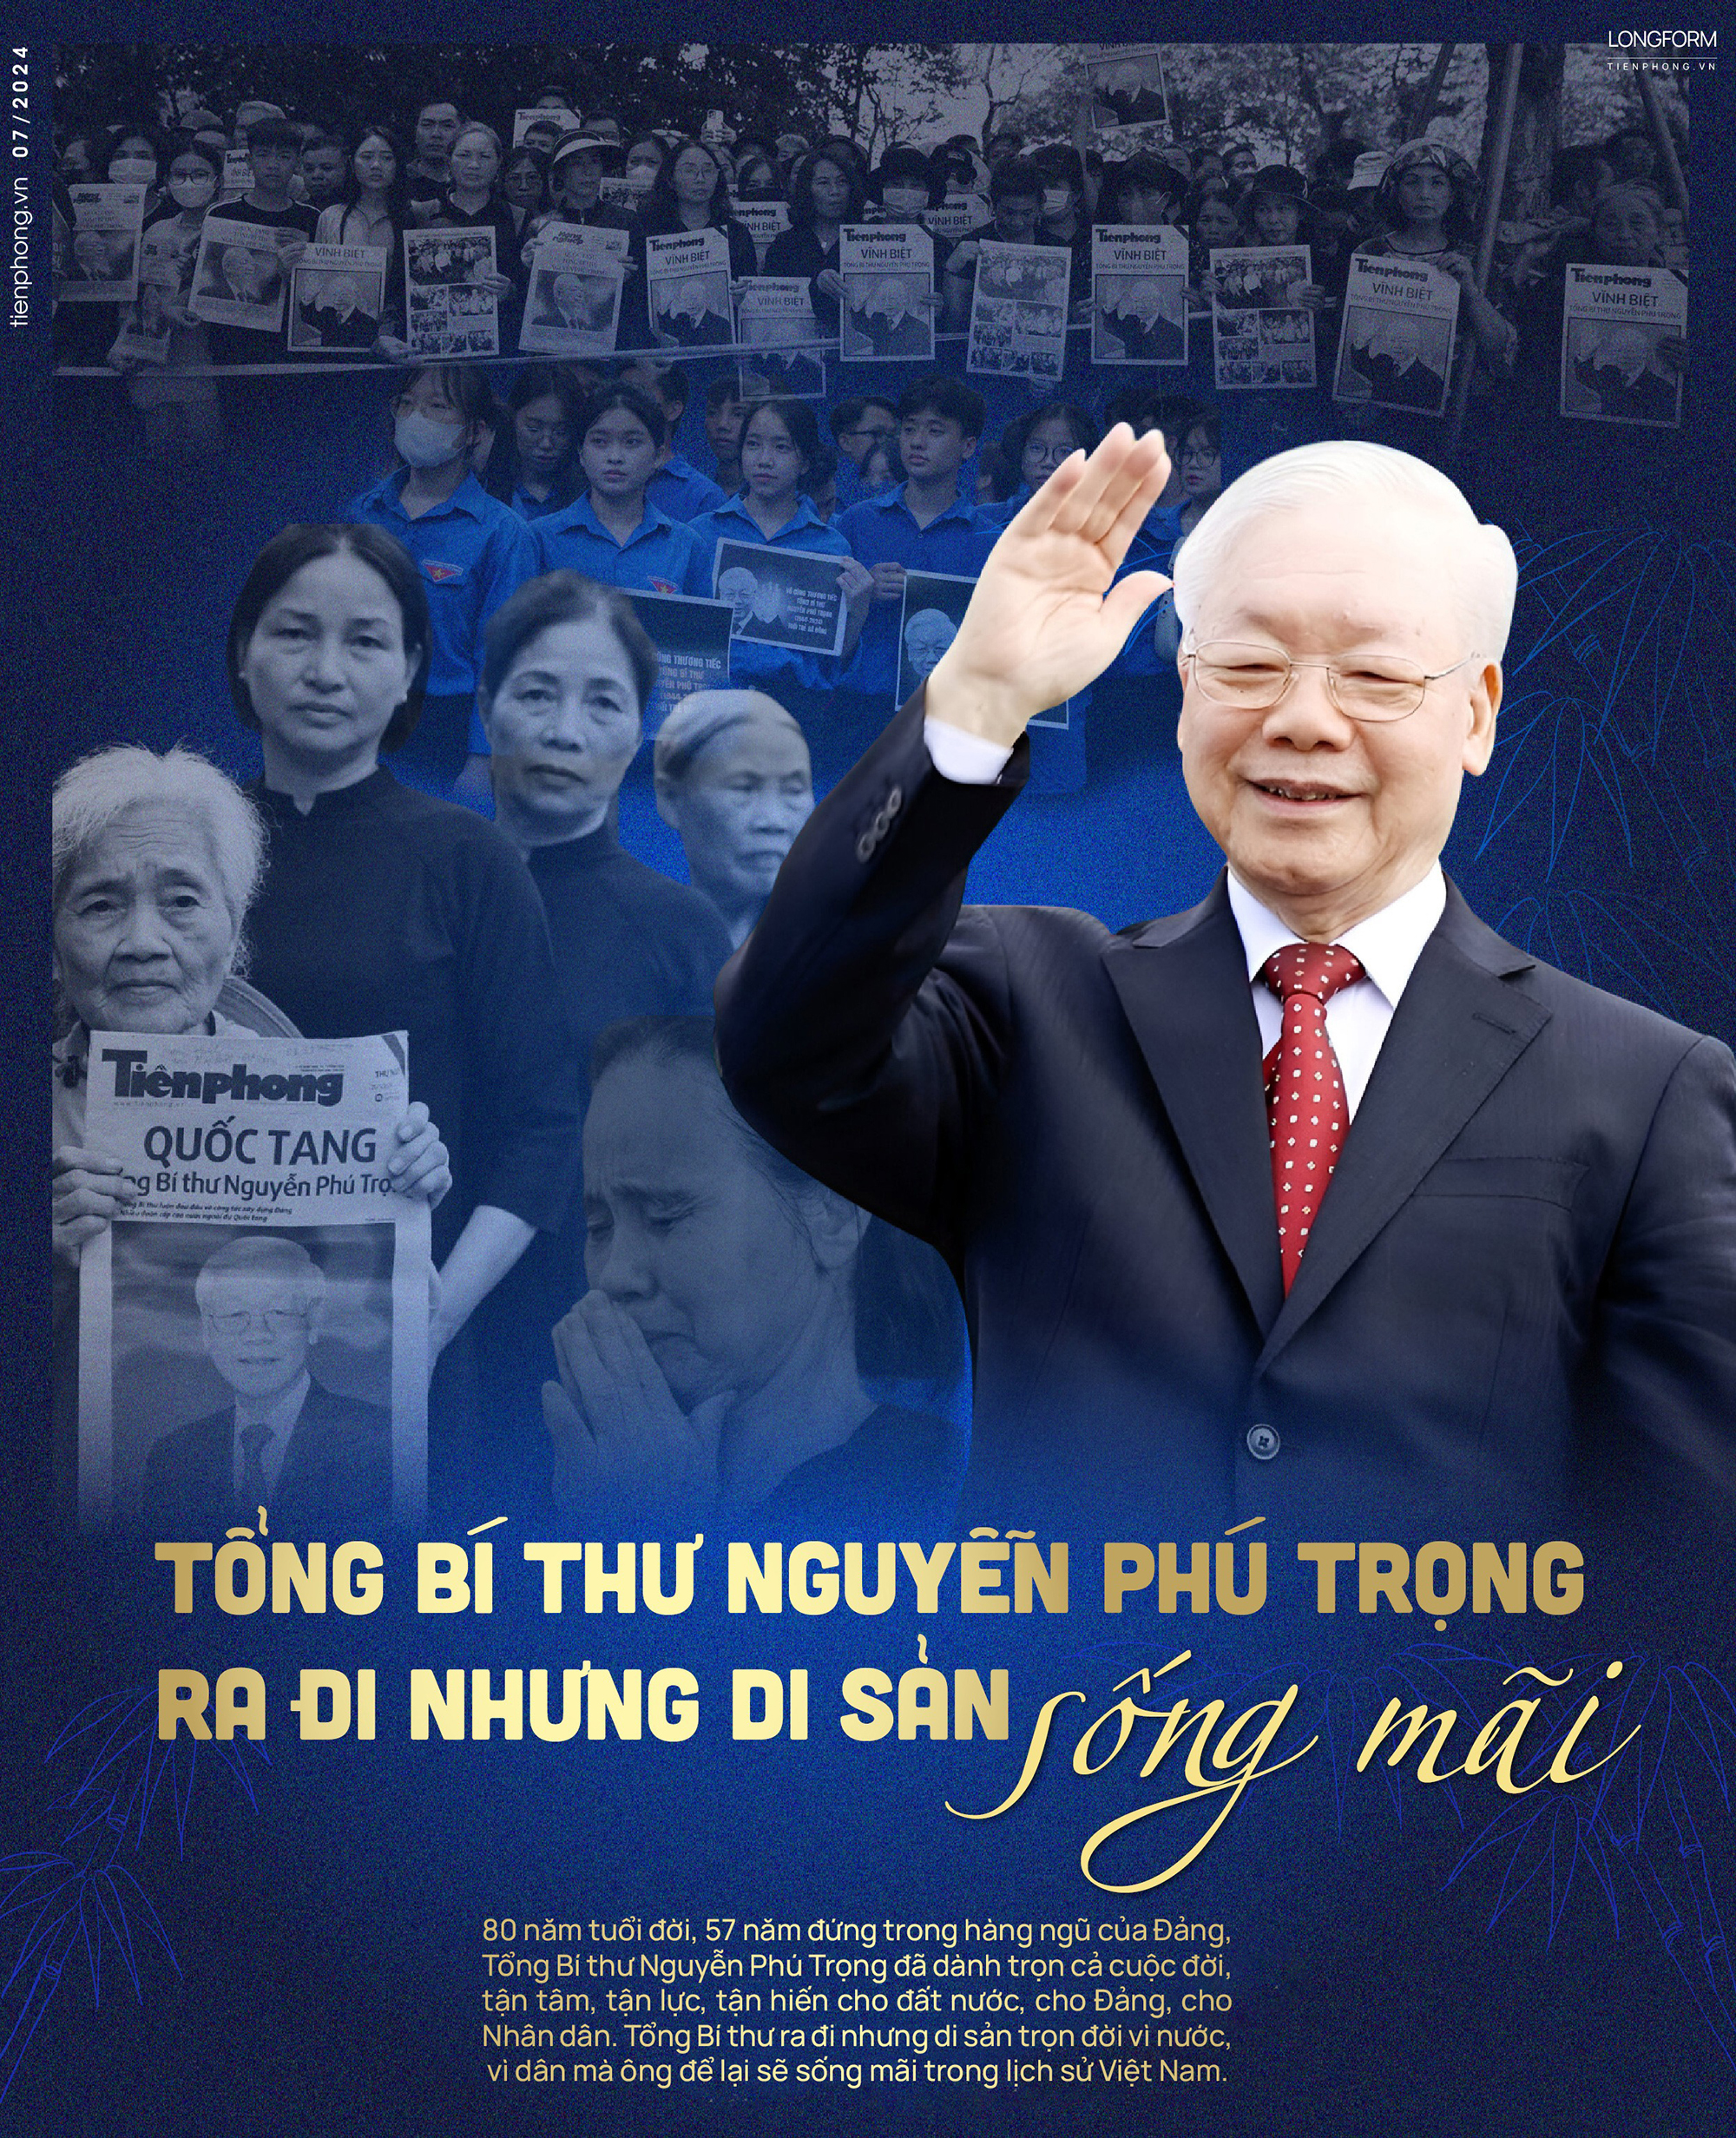 Tổng Bí thư Nguyễn Phú Trọng ra đi nhưng di sản sống mãi